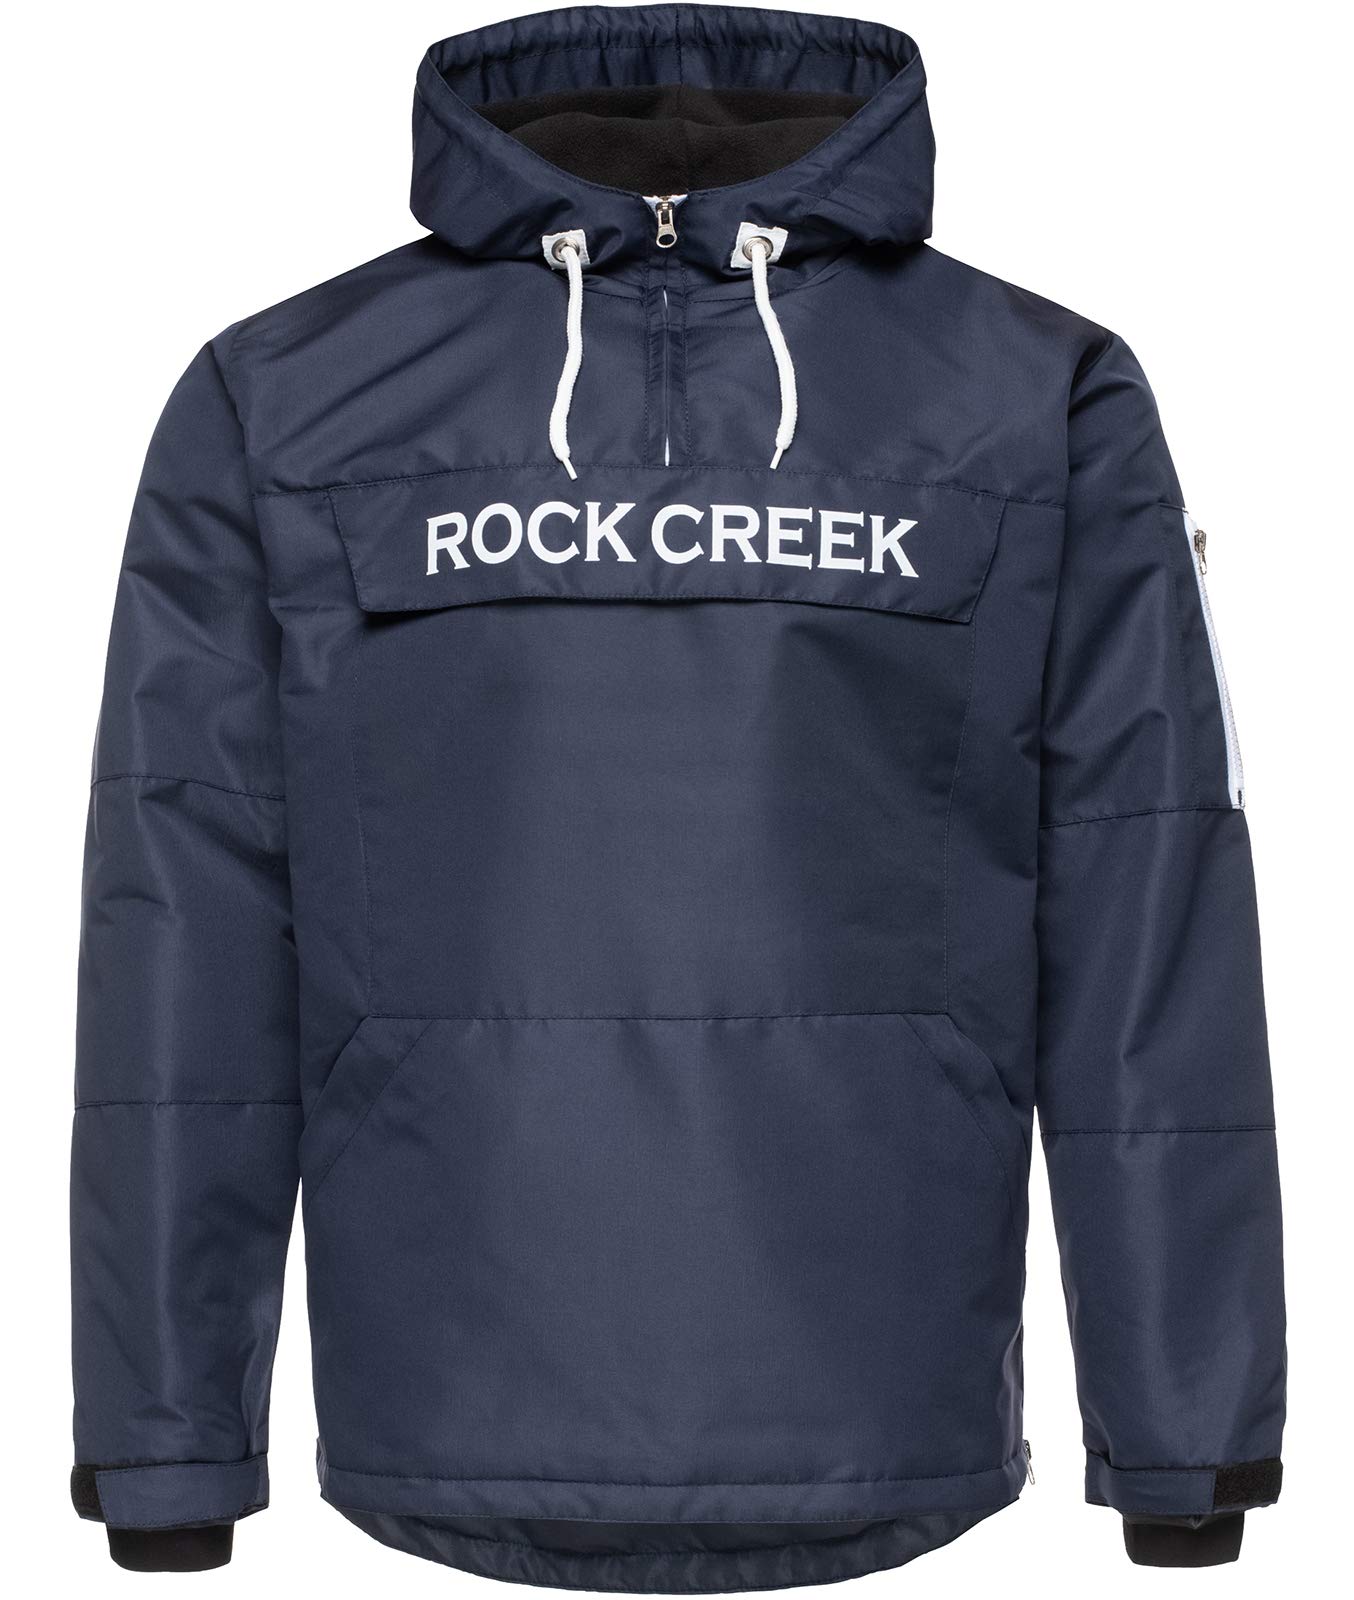 Rock Creek Herren Windbreaker Jacke Übergangsjacke Anorak Schlupfjacke Kapuze Regenjacke Winterjacke Herrenjacke Jacket H-167 Dunkelblau 3XL